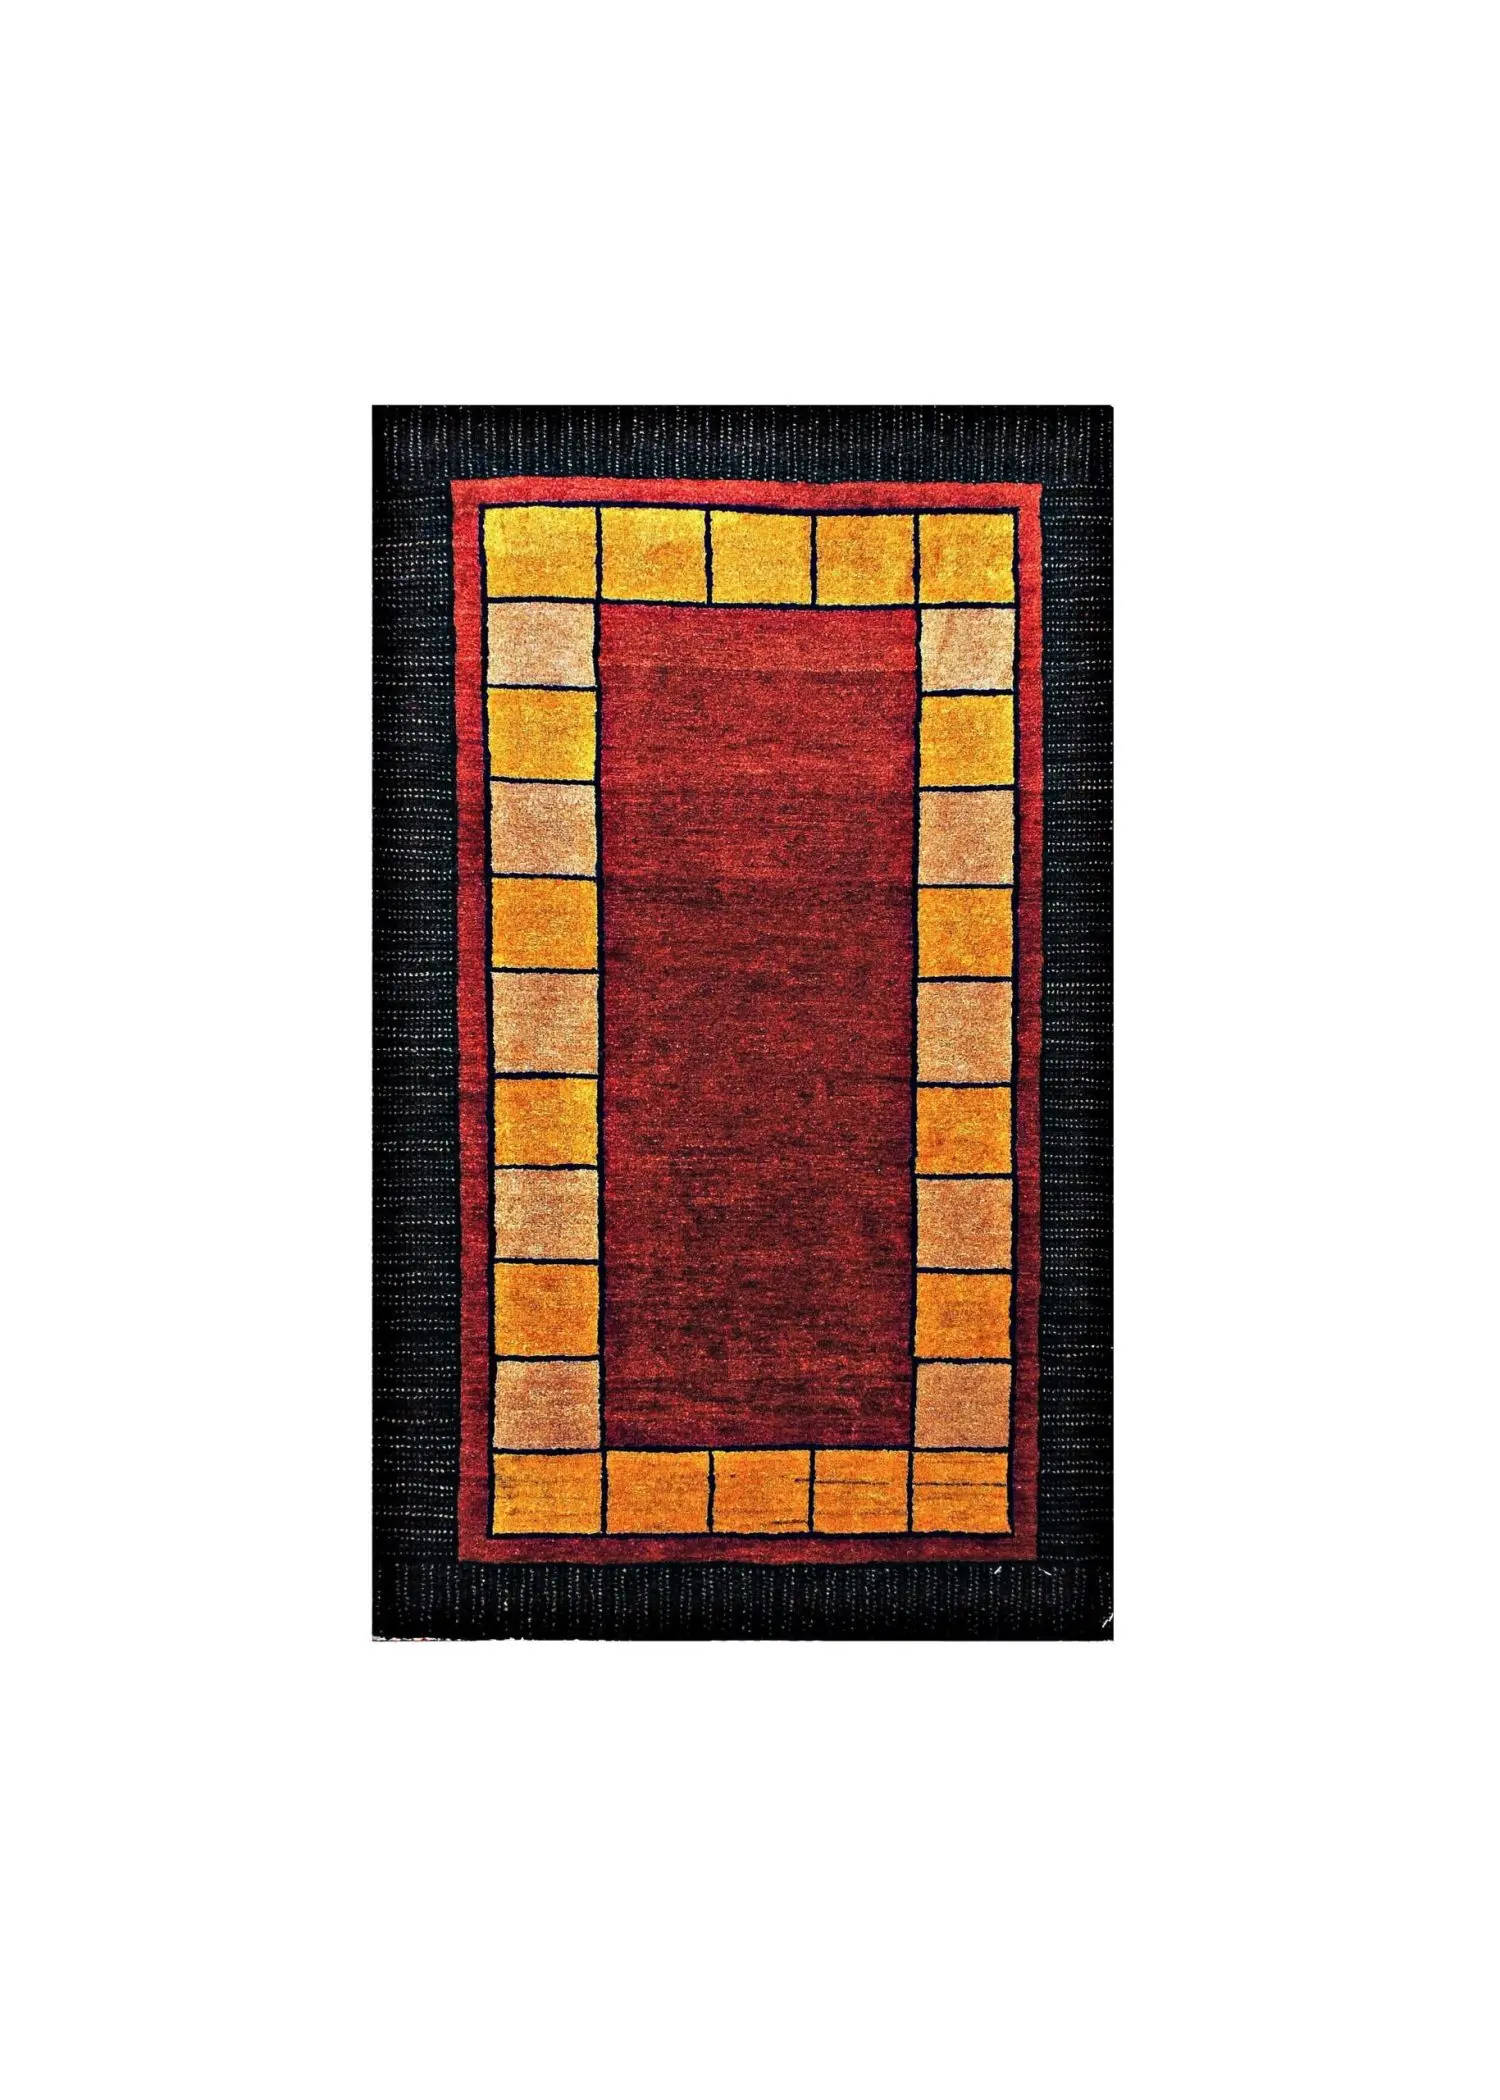 Persian Gabbeh 2' 6" x 4' 2" Red Wool Handmade Area Rug - Shabahang Royal Carpet